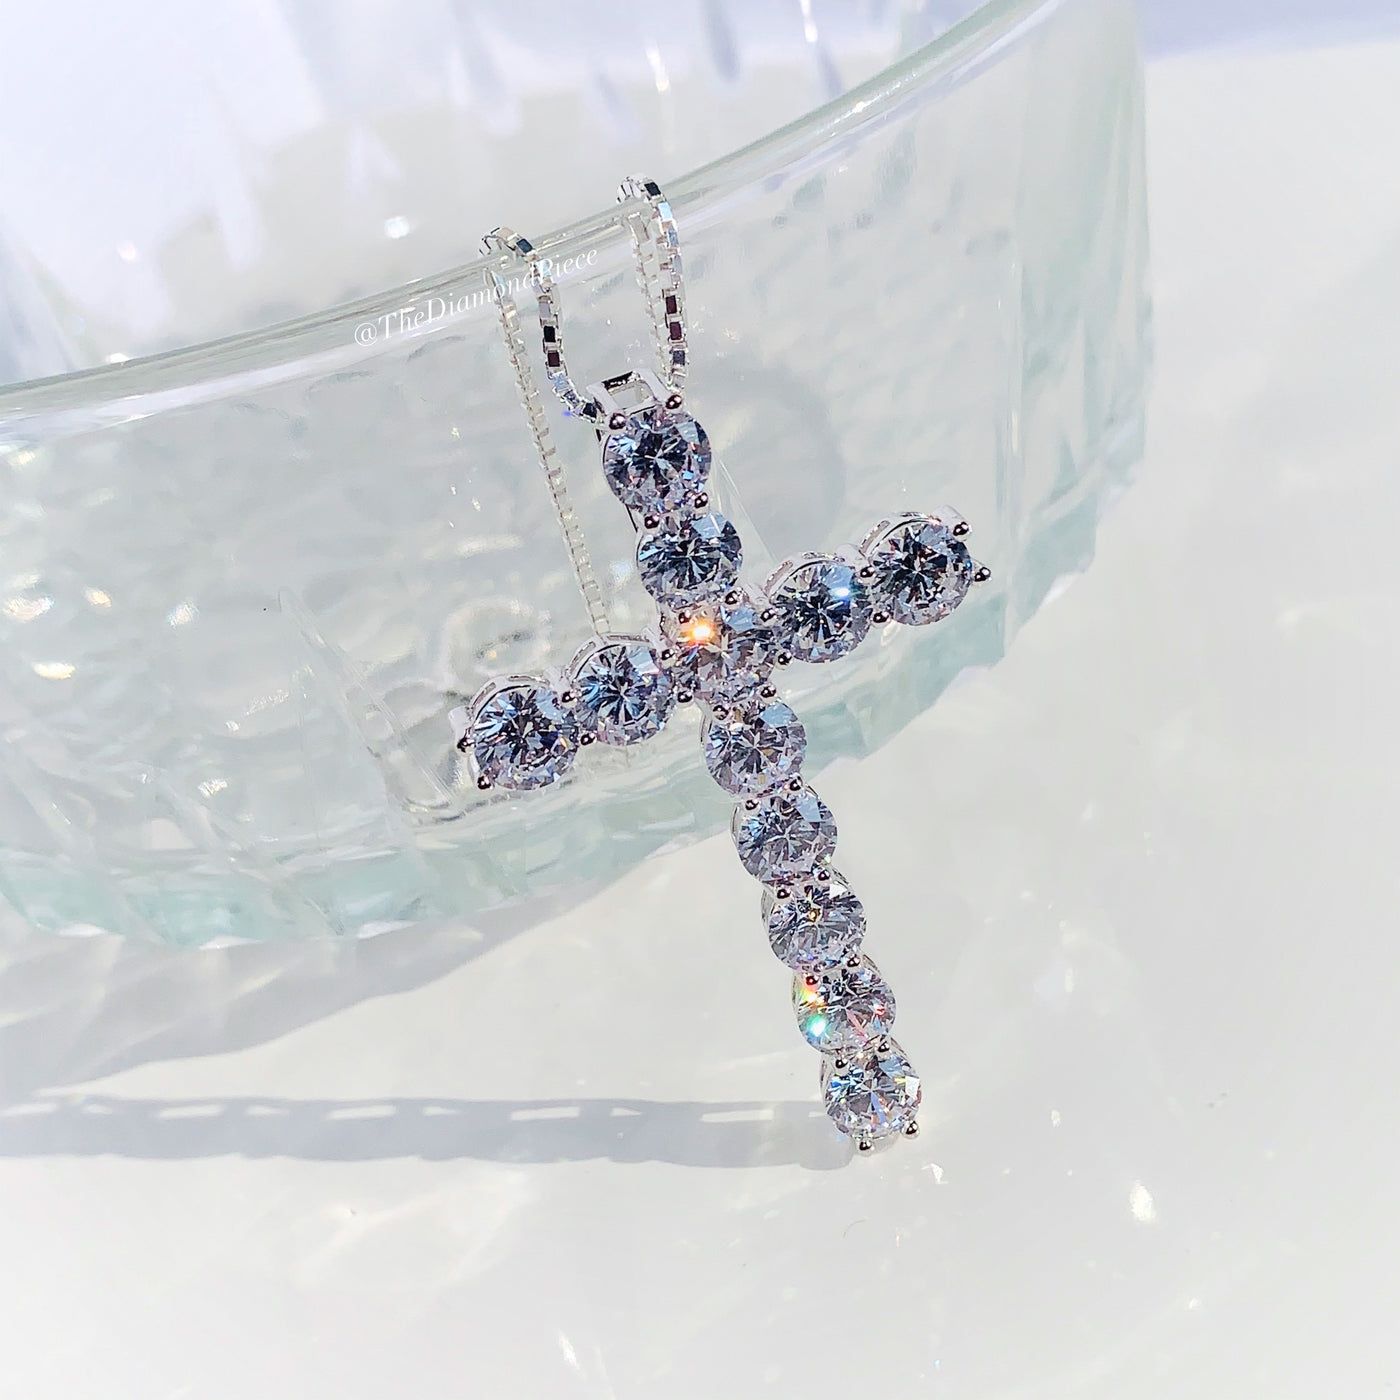 Sterling Silver CZ Diamond Cross Necklace